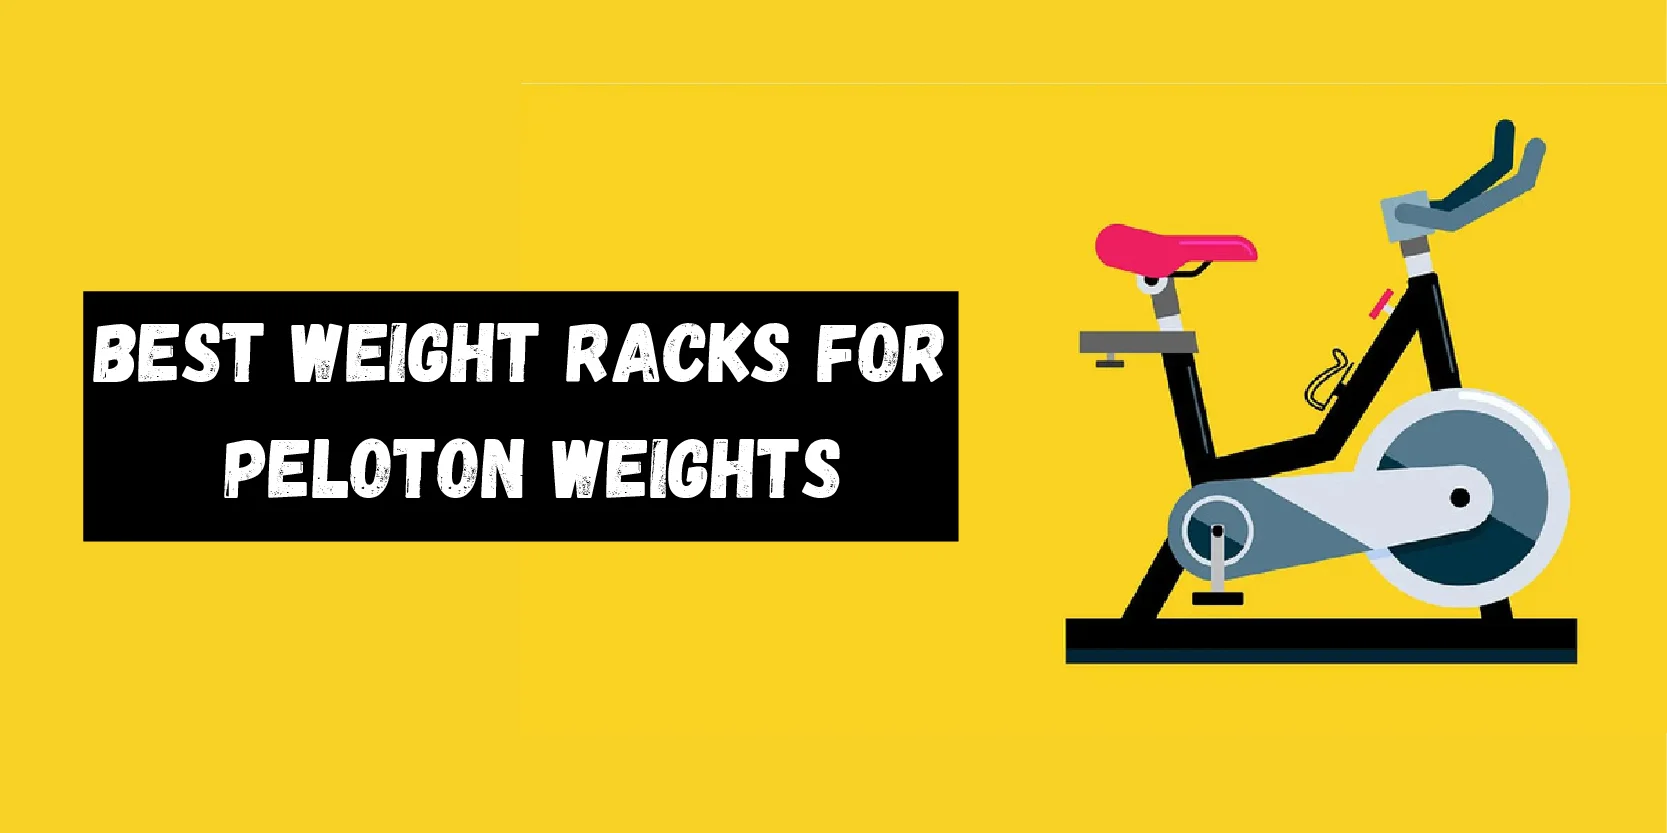 Best Weight Racks for Peloton Weights